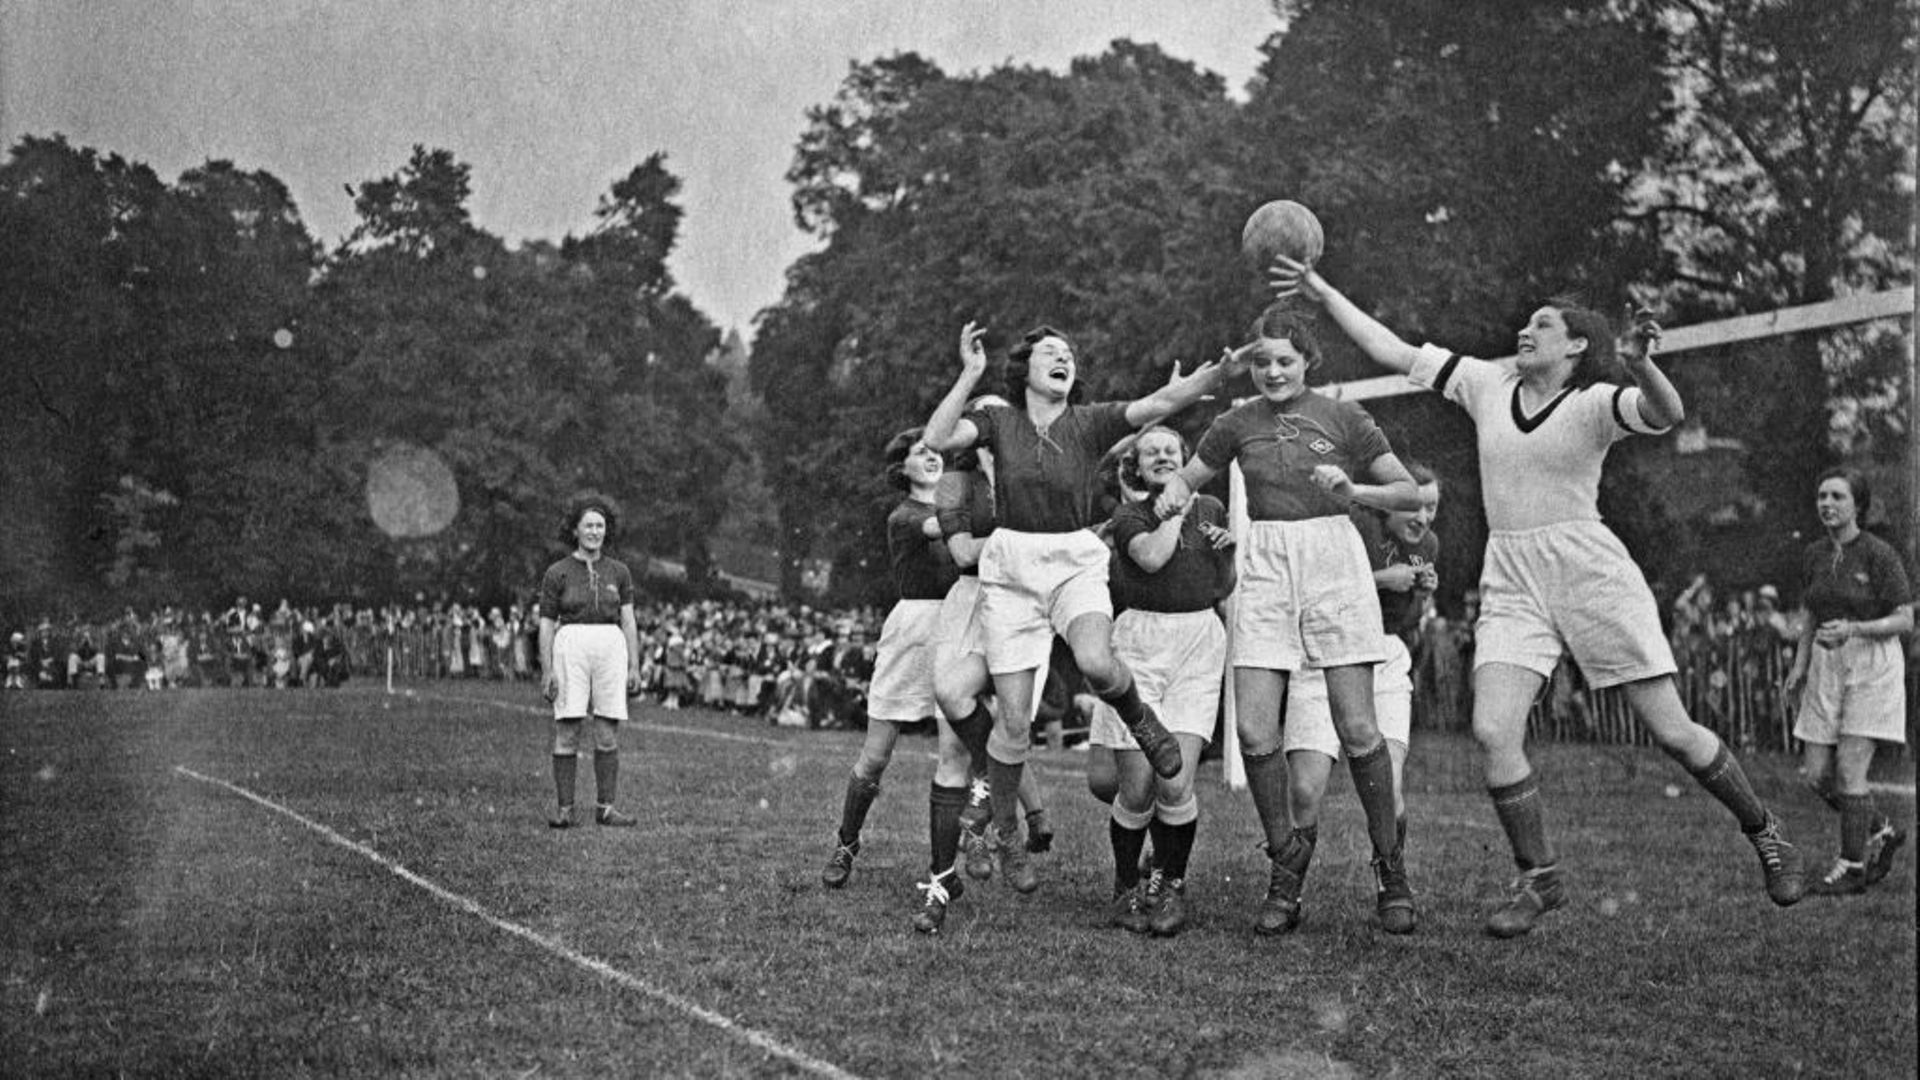 L'équipe d'Invictas affronte celle de Marks & Spencer dans un match de football féminin qui s'est déroulé le 28 juin 1933 lors du Gala Broom au Queens Mead à Bromley en Angleterre.